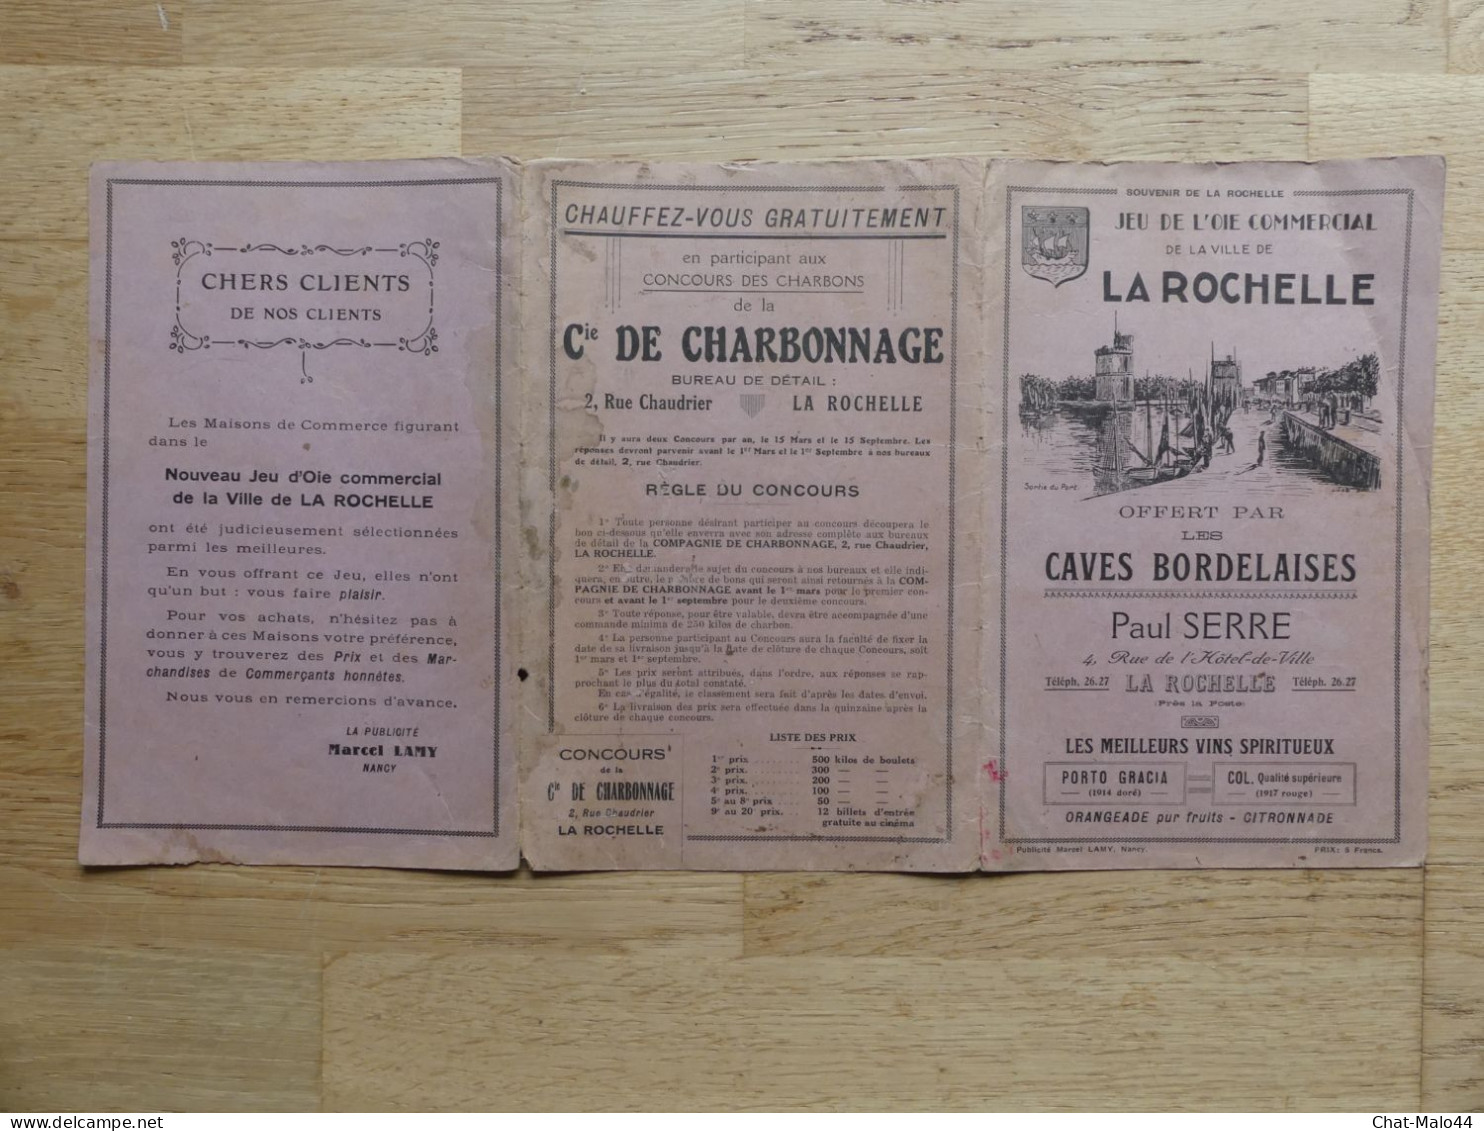 Jeu De L'oie Commercial De La Ville De La Rochelle. Offert Par Les Caves Bordelaises, Paul Serre, La Rochelle. 1935 - Publicidad